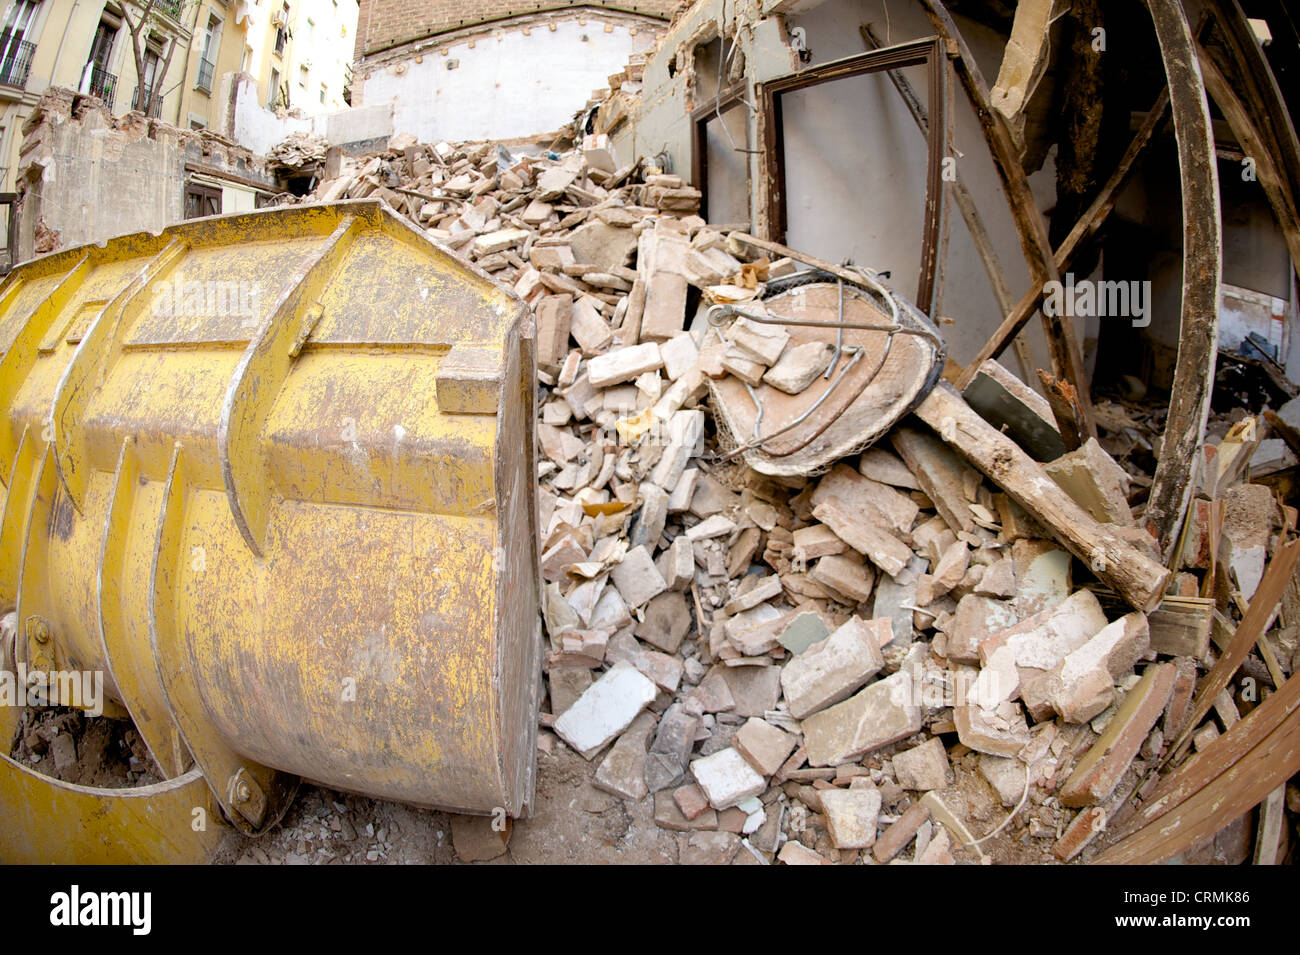 Vue latérale d'un bâtiment démolition digger jaune et l'effacement des décombres, illustrant le secteur du bâtiment en ruines, Espagne Banque D'Images